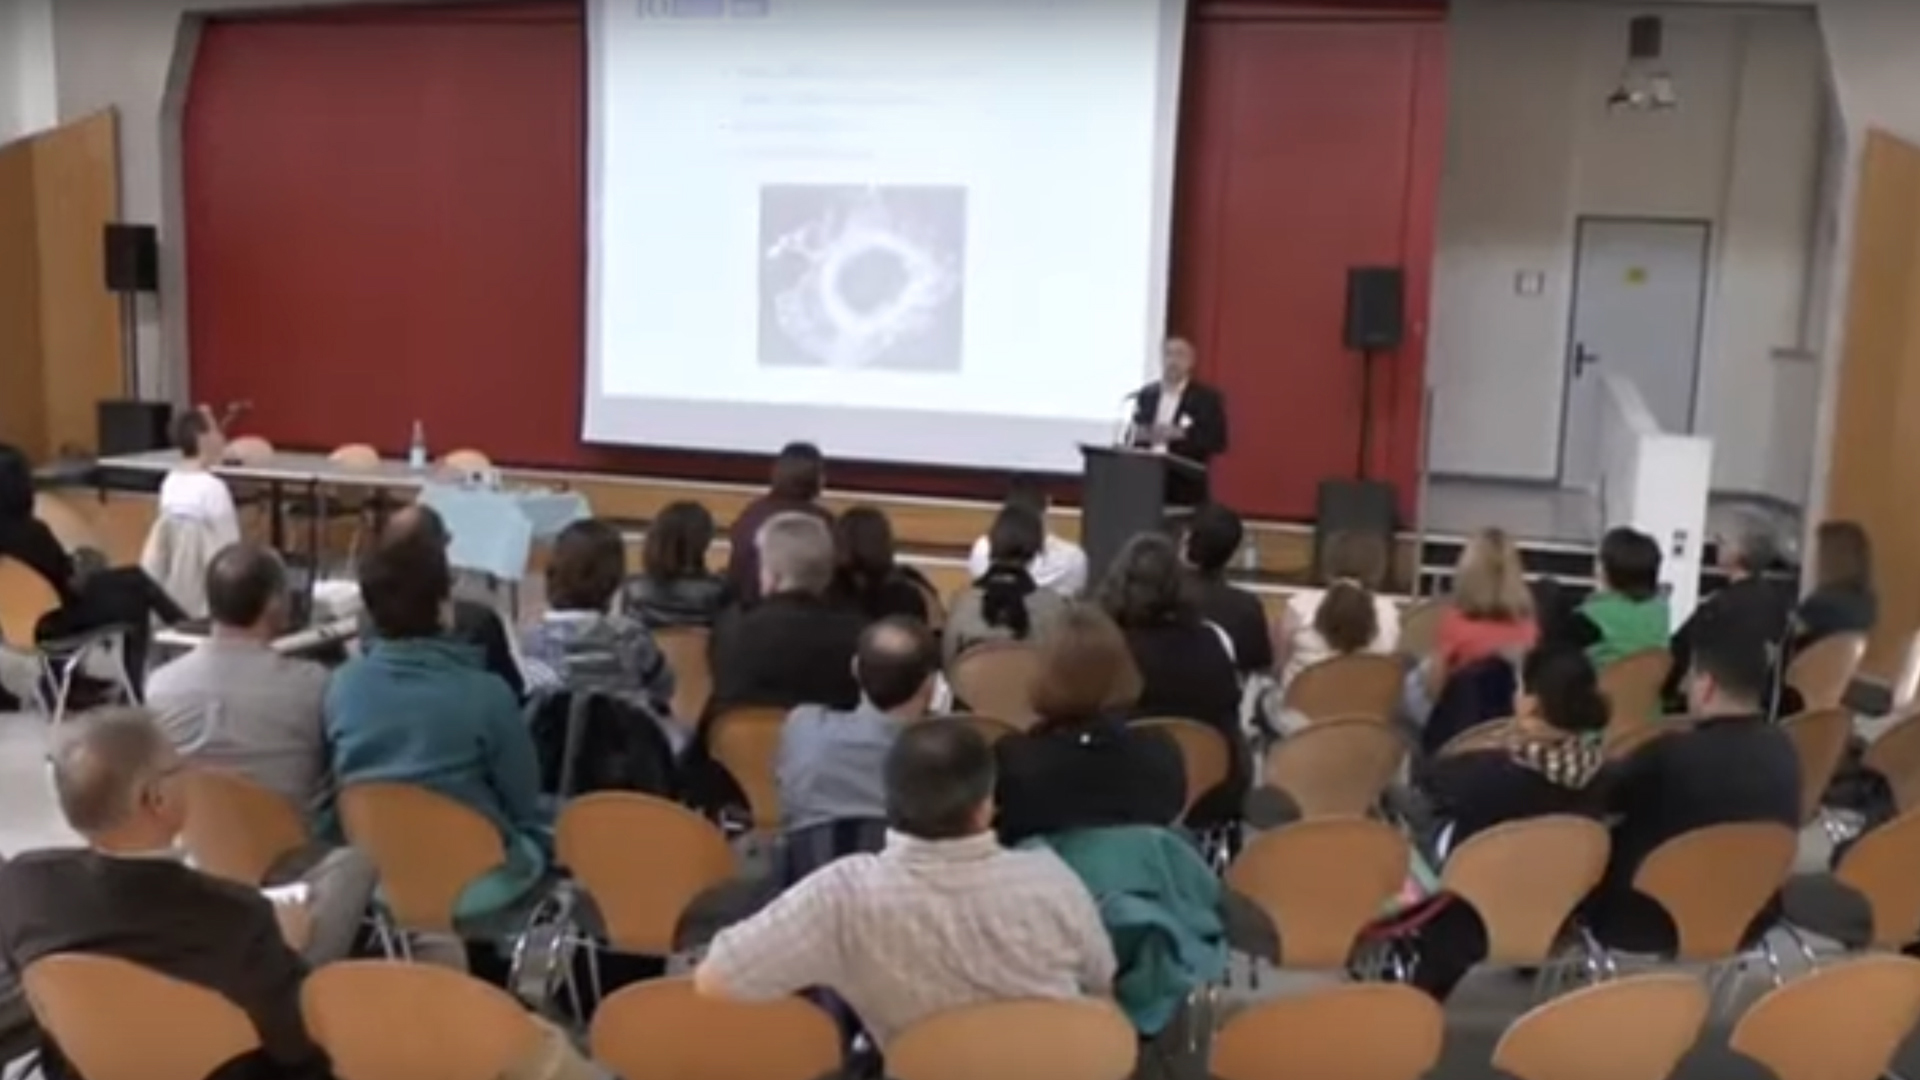 Glaukom-Kindertag 2013 an der blista in Marburg. Publikum hört Vortrag in einem Saal